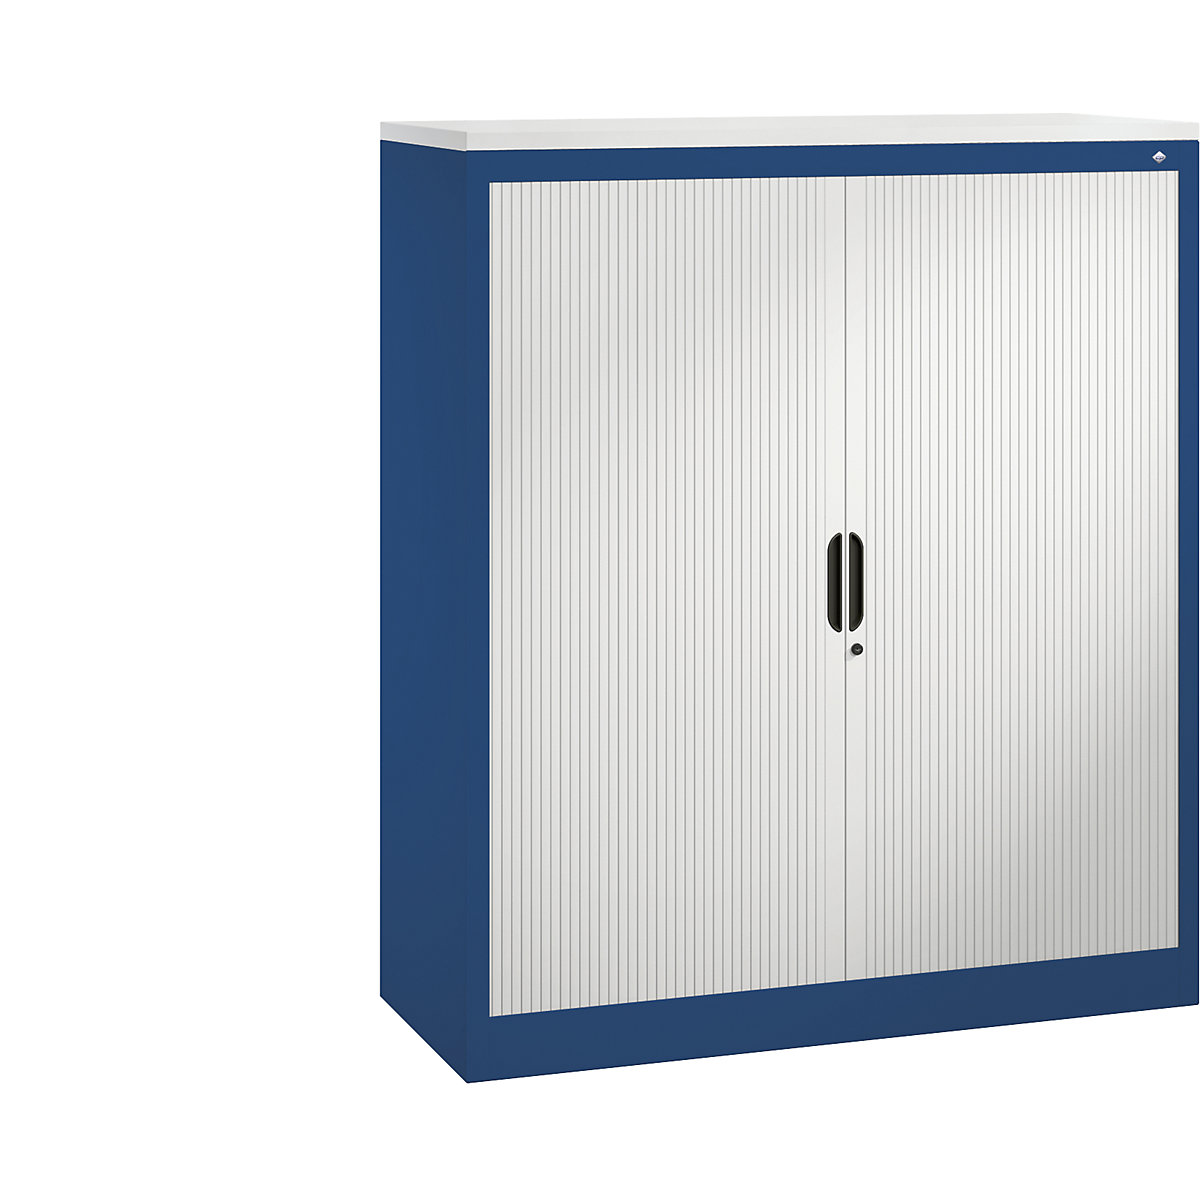 Žaluziová skříň s horizontální žaluzií – C+P, v x š x h 1345 x 1200 x 420 mm, 3 police, 3,5 výšky pořadačů, hořcově modrá / světle šedá-3